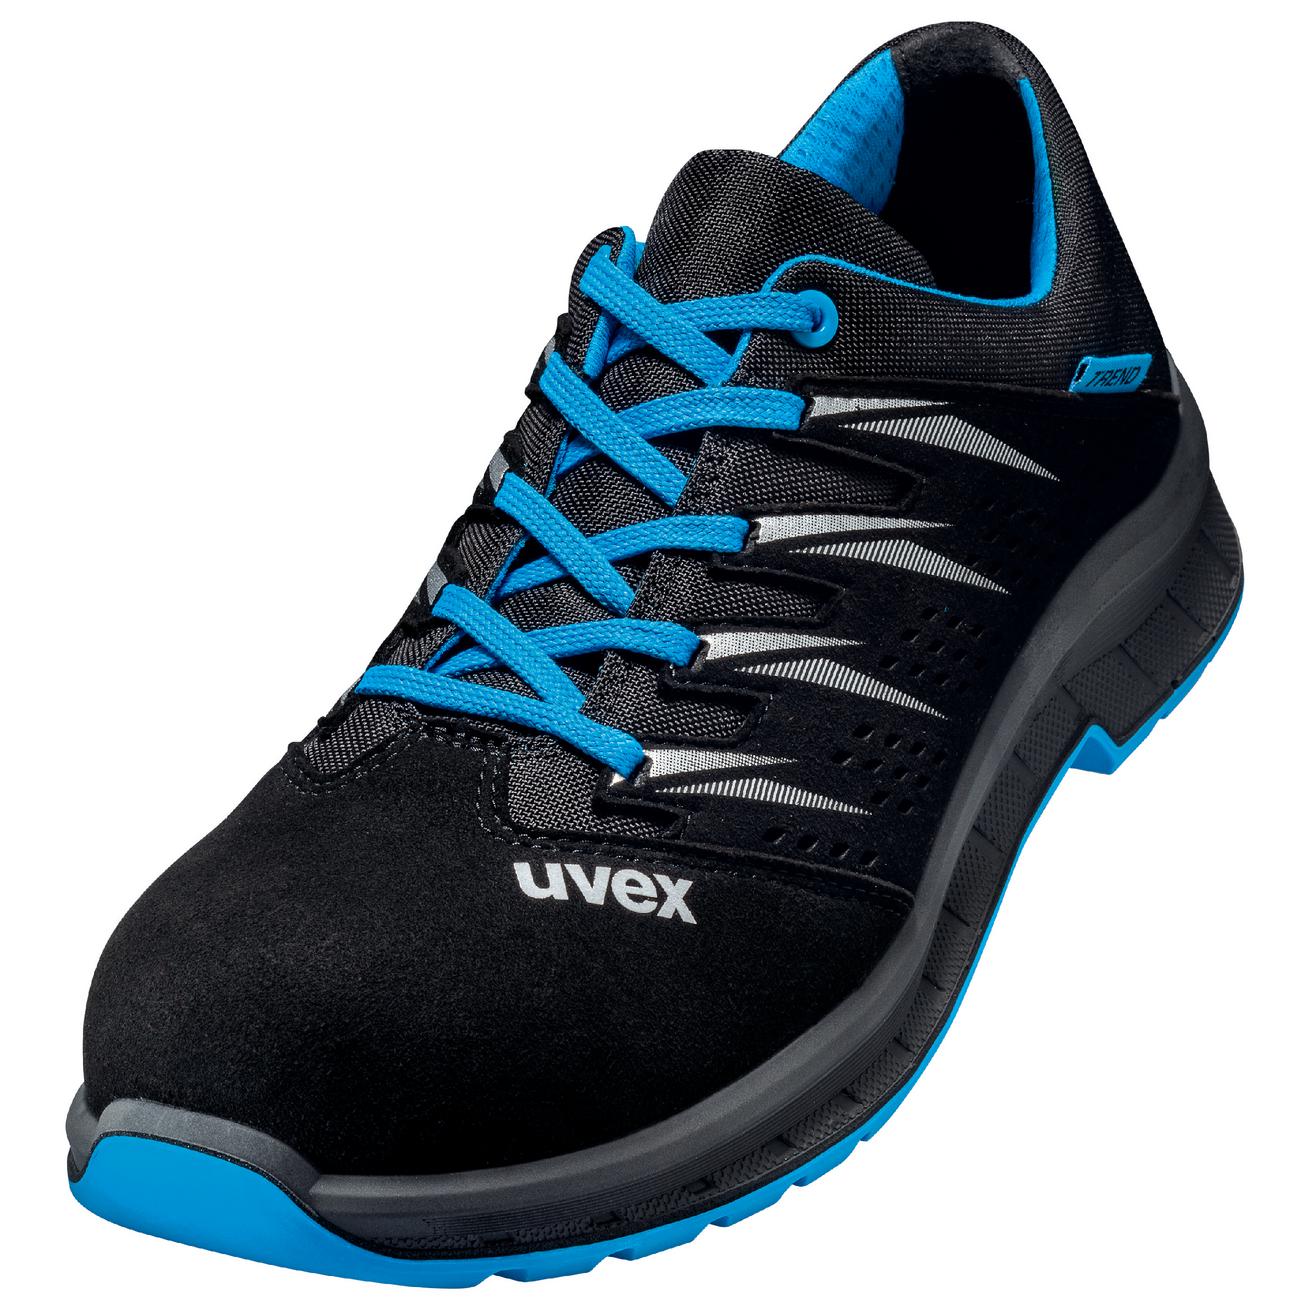 Perf. polobotka obuv uvex 2 trend, šíře 11, S1 SRC, černá/modrá 6937 Velikost: 52, Kód produktu: 6937852